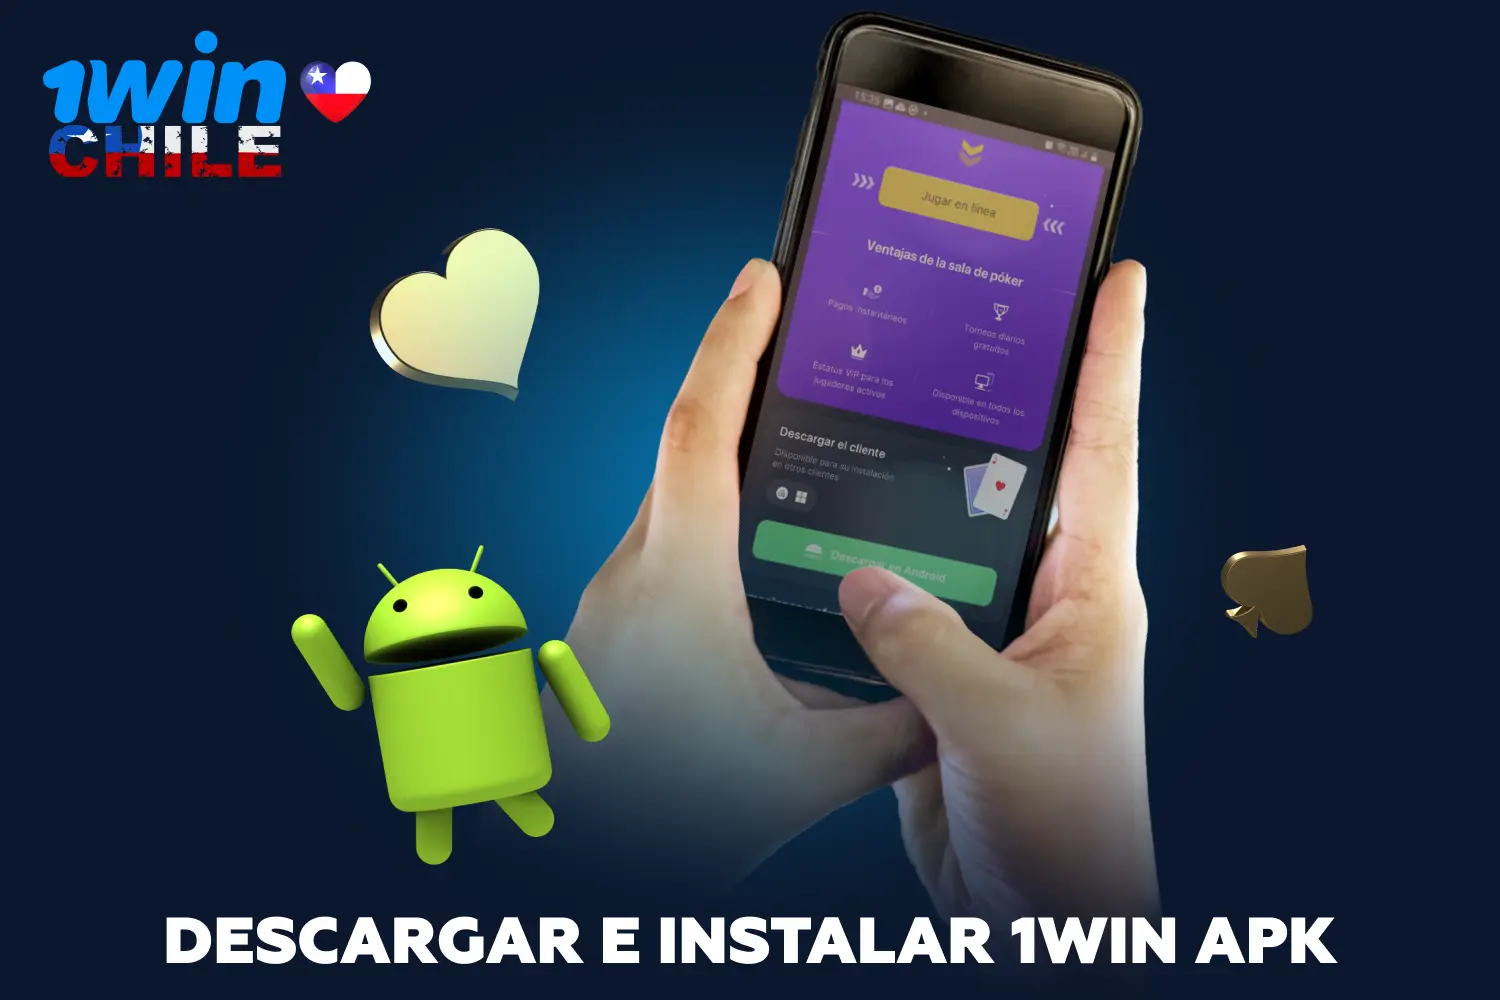 Tras instalar la aplicación 1win en Android, los usuarios de Chile tendrán acceso a todos los juegos y actividades del casino